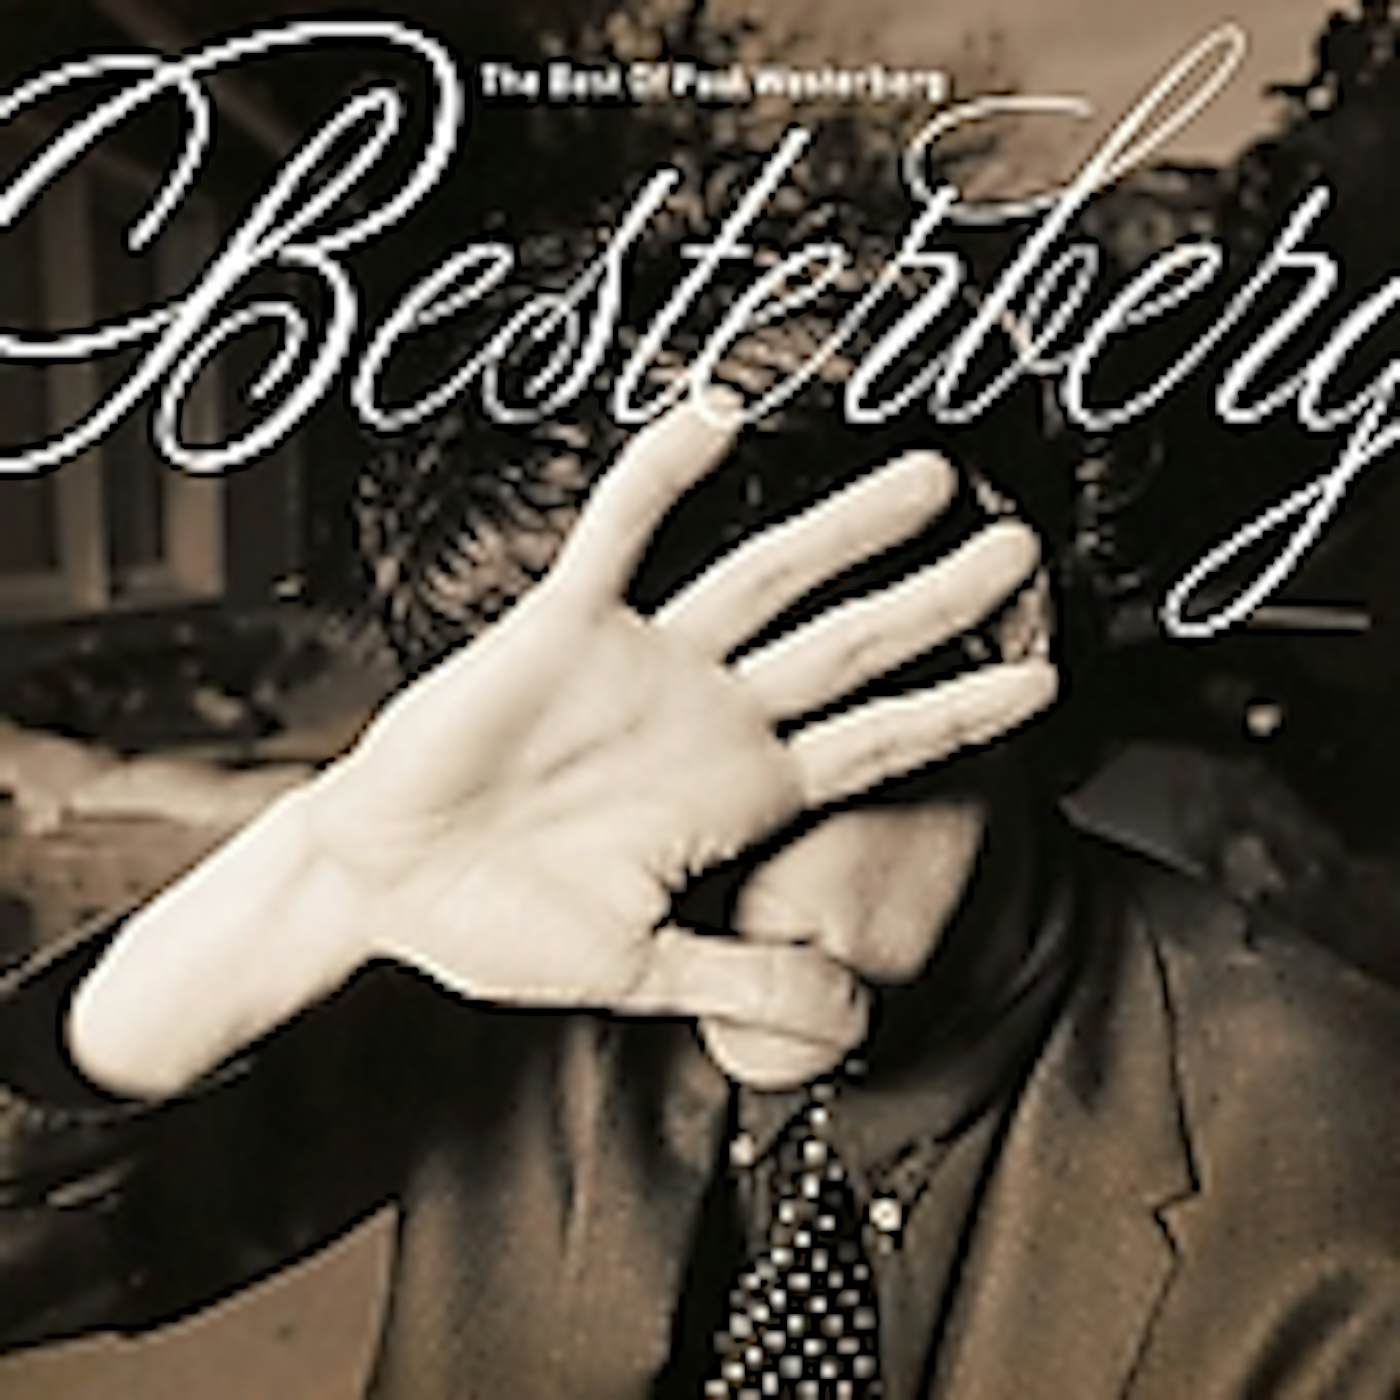 BESTERBERG: BEST OF PAUL WESTERBERG CD